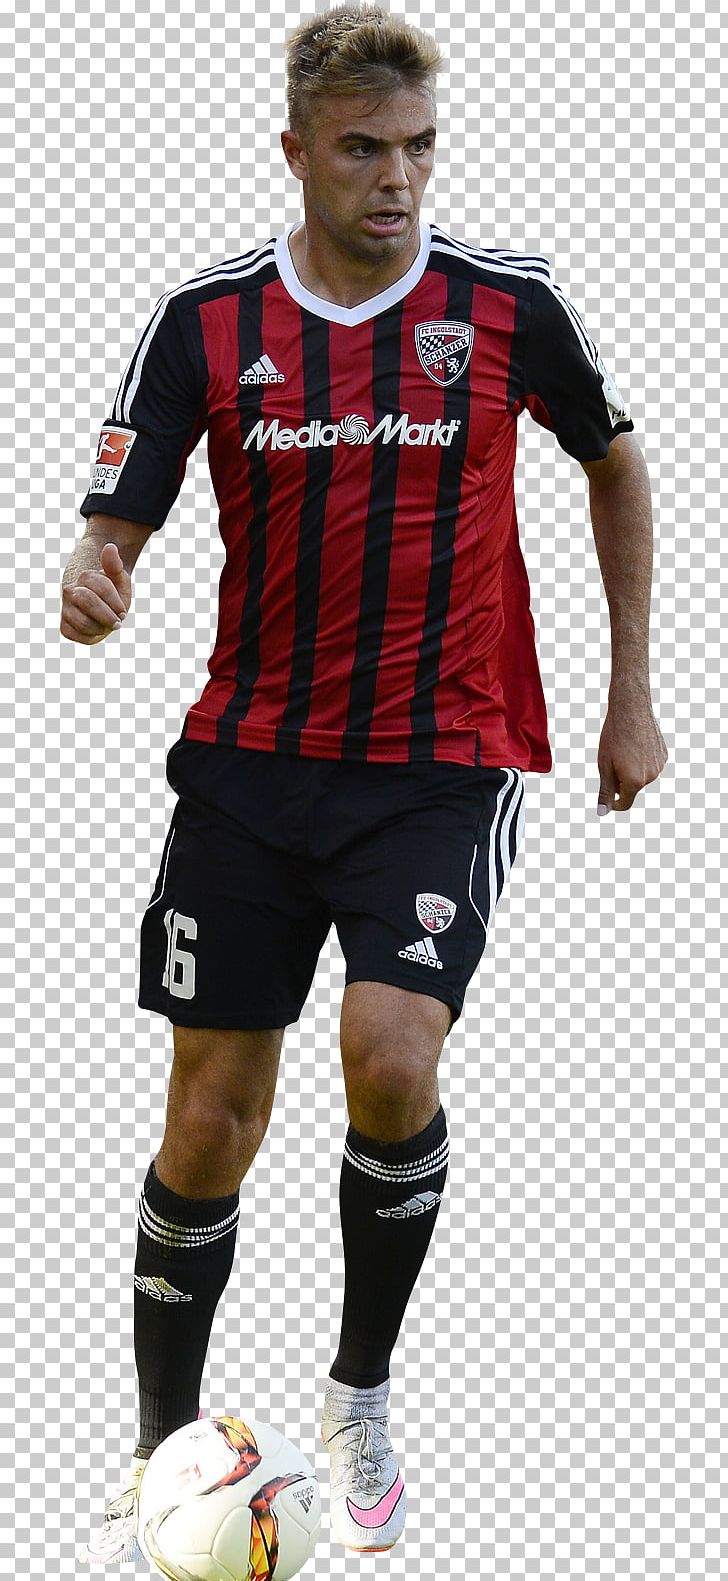 Lukas Hinterseer Football Player Sport FC Ingolstadt 04 PNG, Clipart, Ball, Clothing, Fc Ingolstadt 04, Football, Football Player Free PNG Download